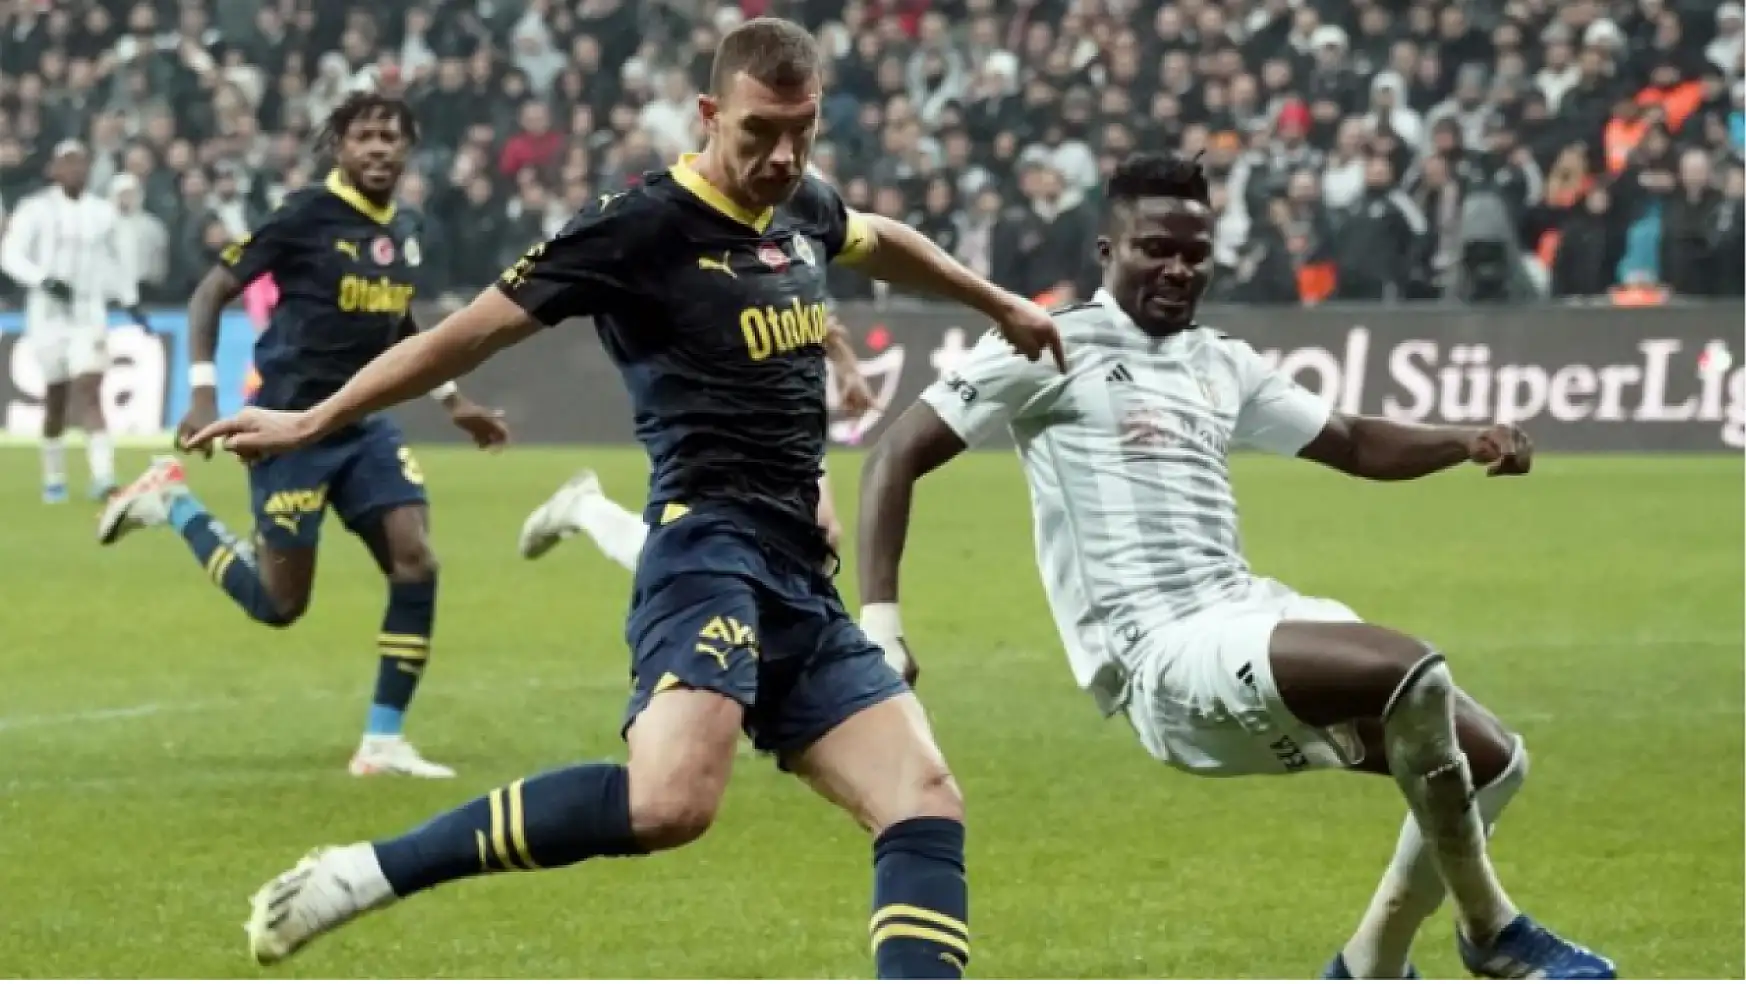 Fenerbahçe - Beşiktaş derbisine yoğun basın ilgisi